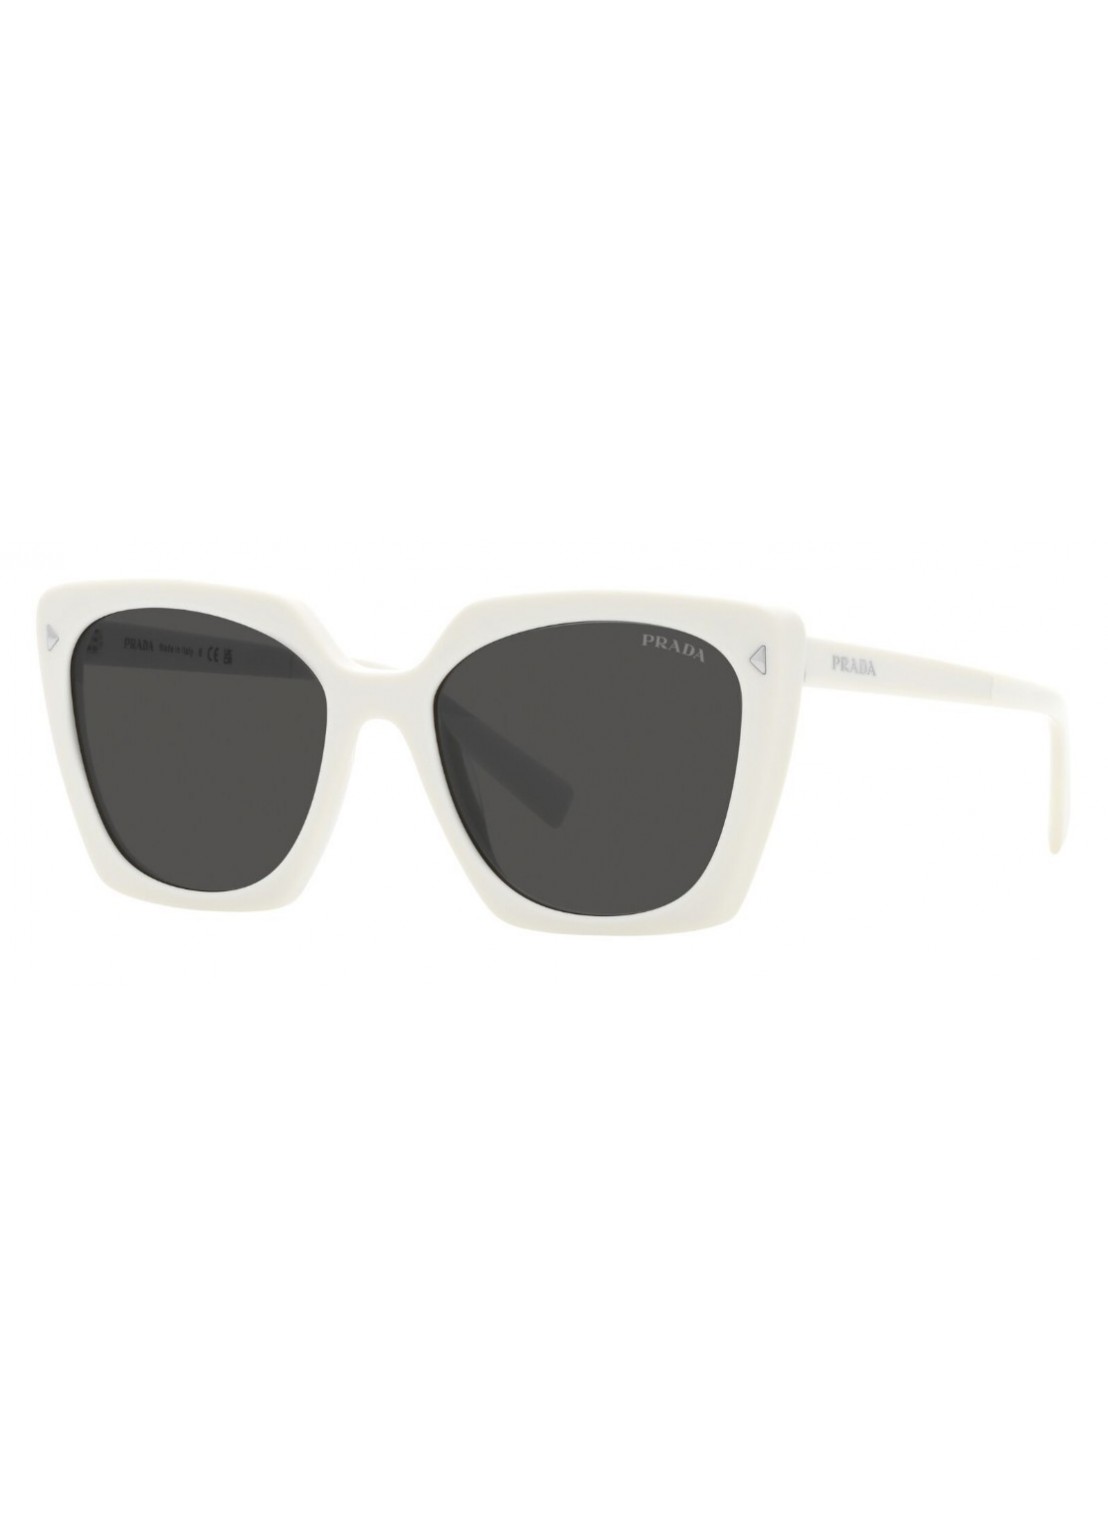 Gafas prada sunglasses woman 0pr23zs 0pr23zs 1425s0 talla transparente
 